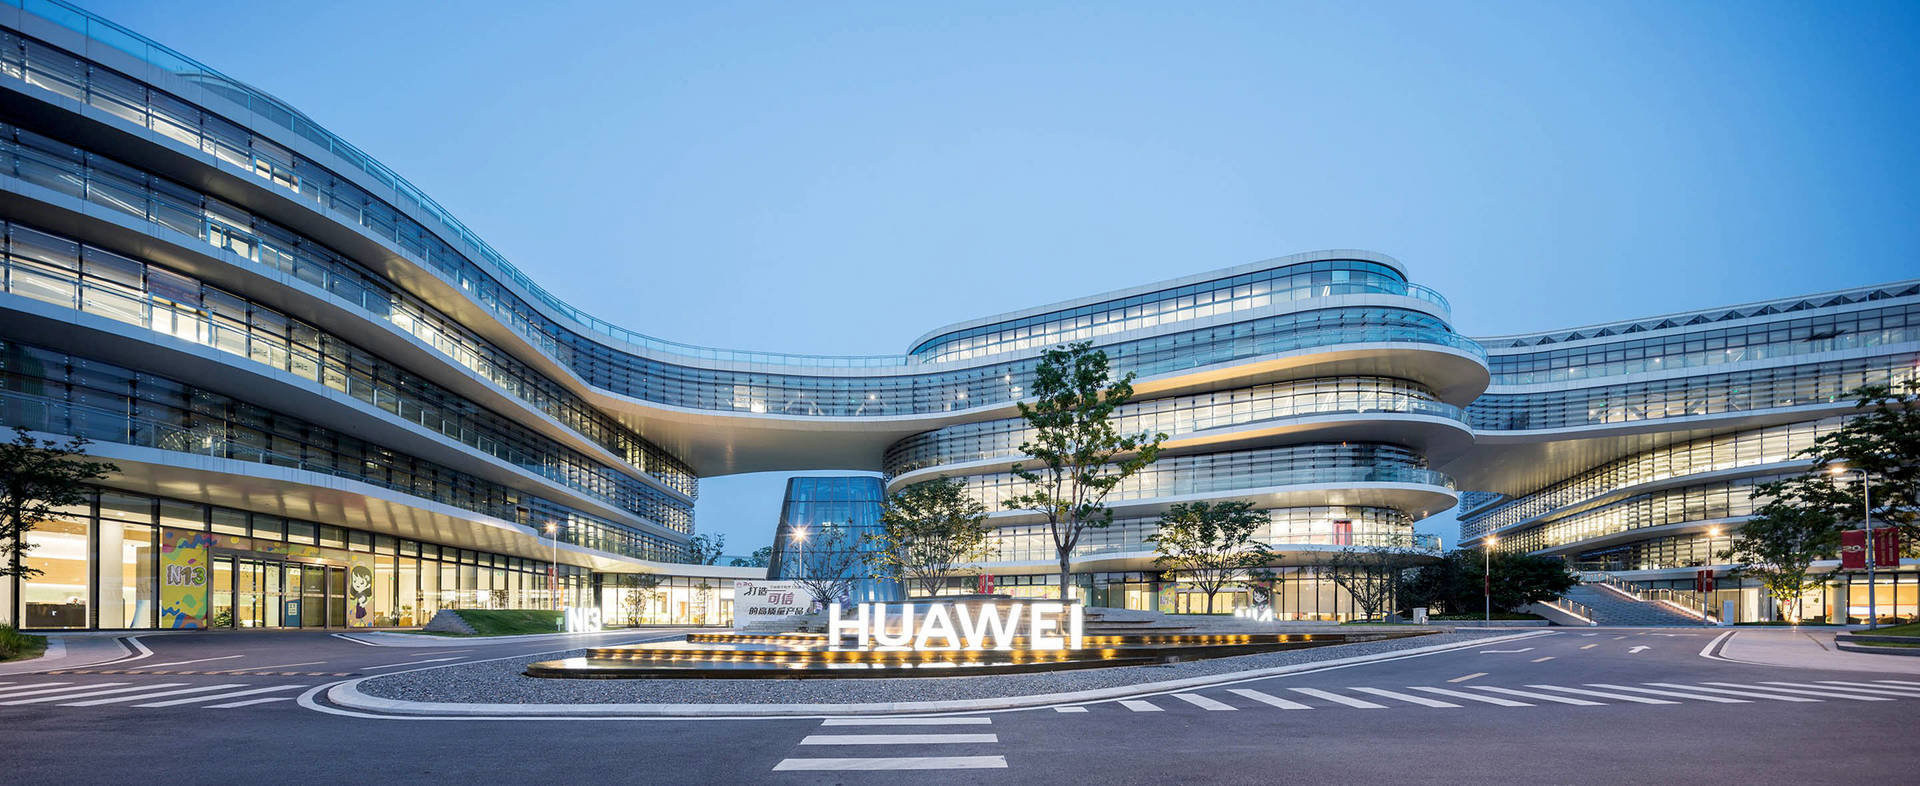 Nanjing Huawei Rd Center Background